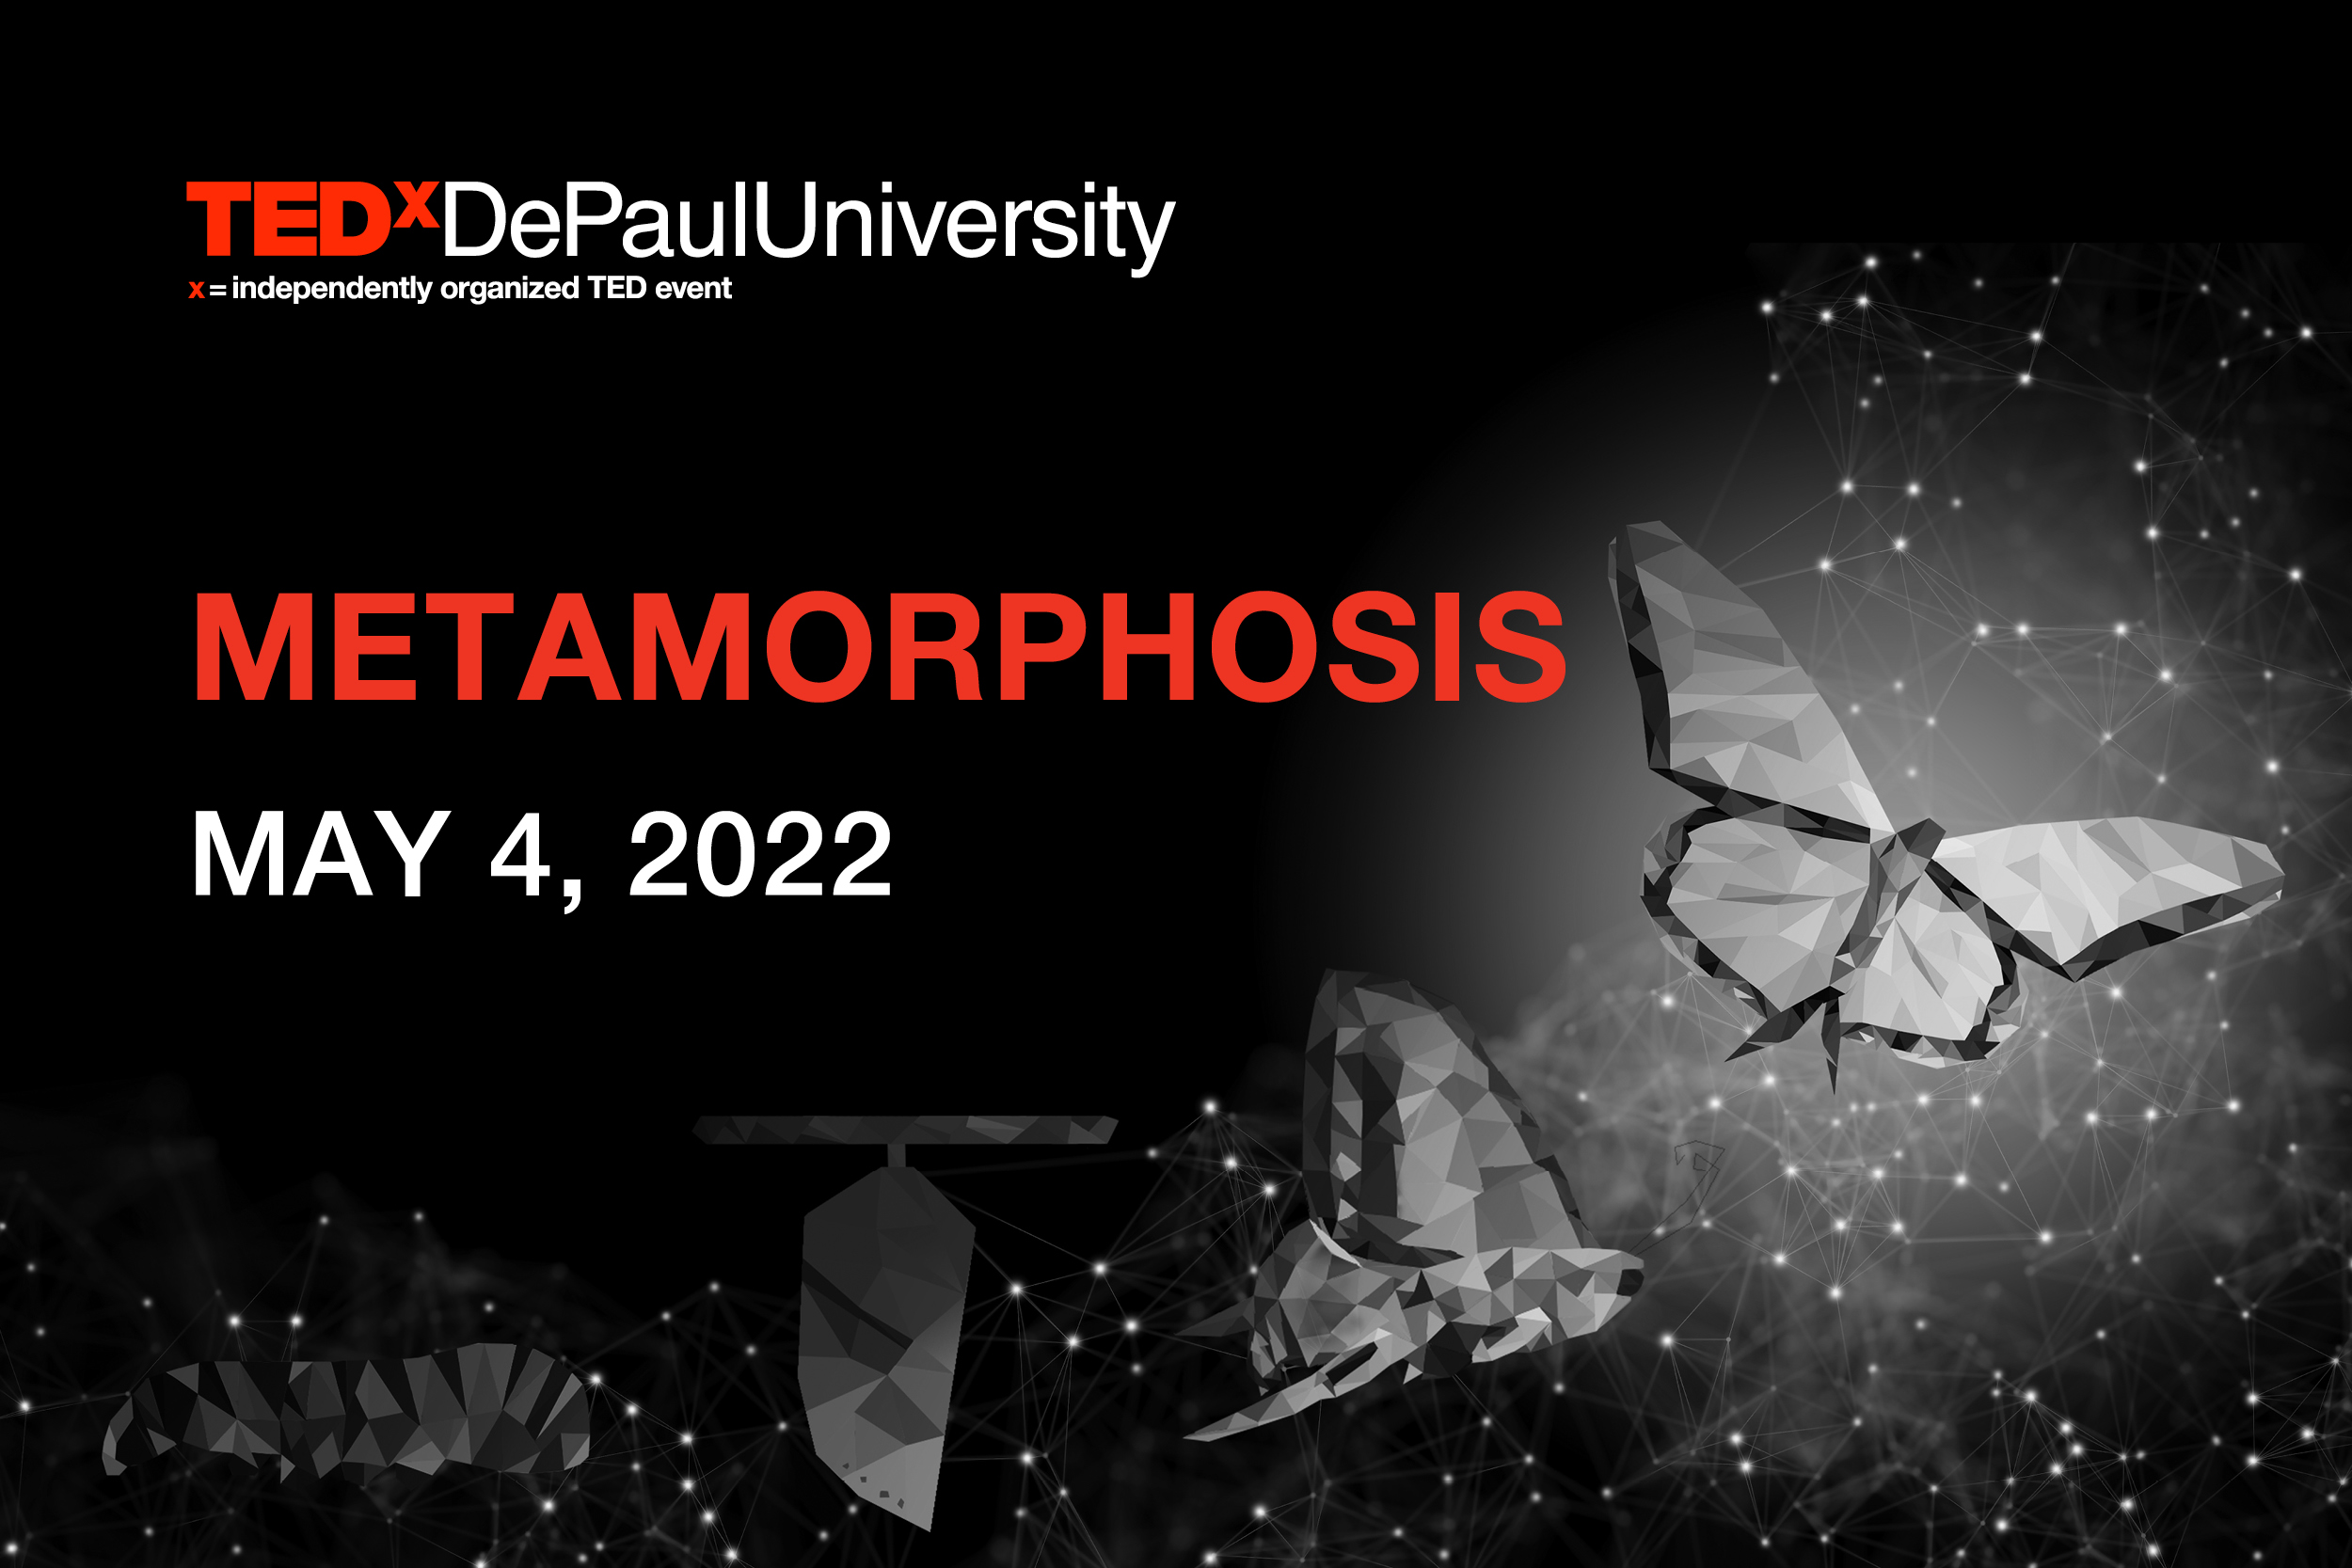 TEDxDePaulUniversity